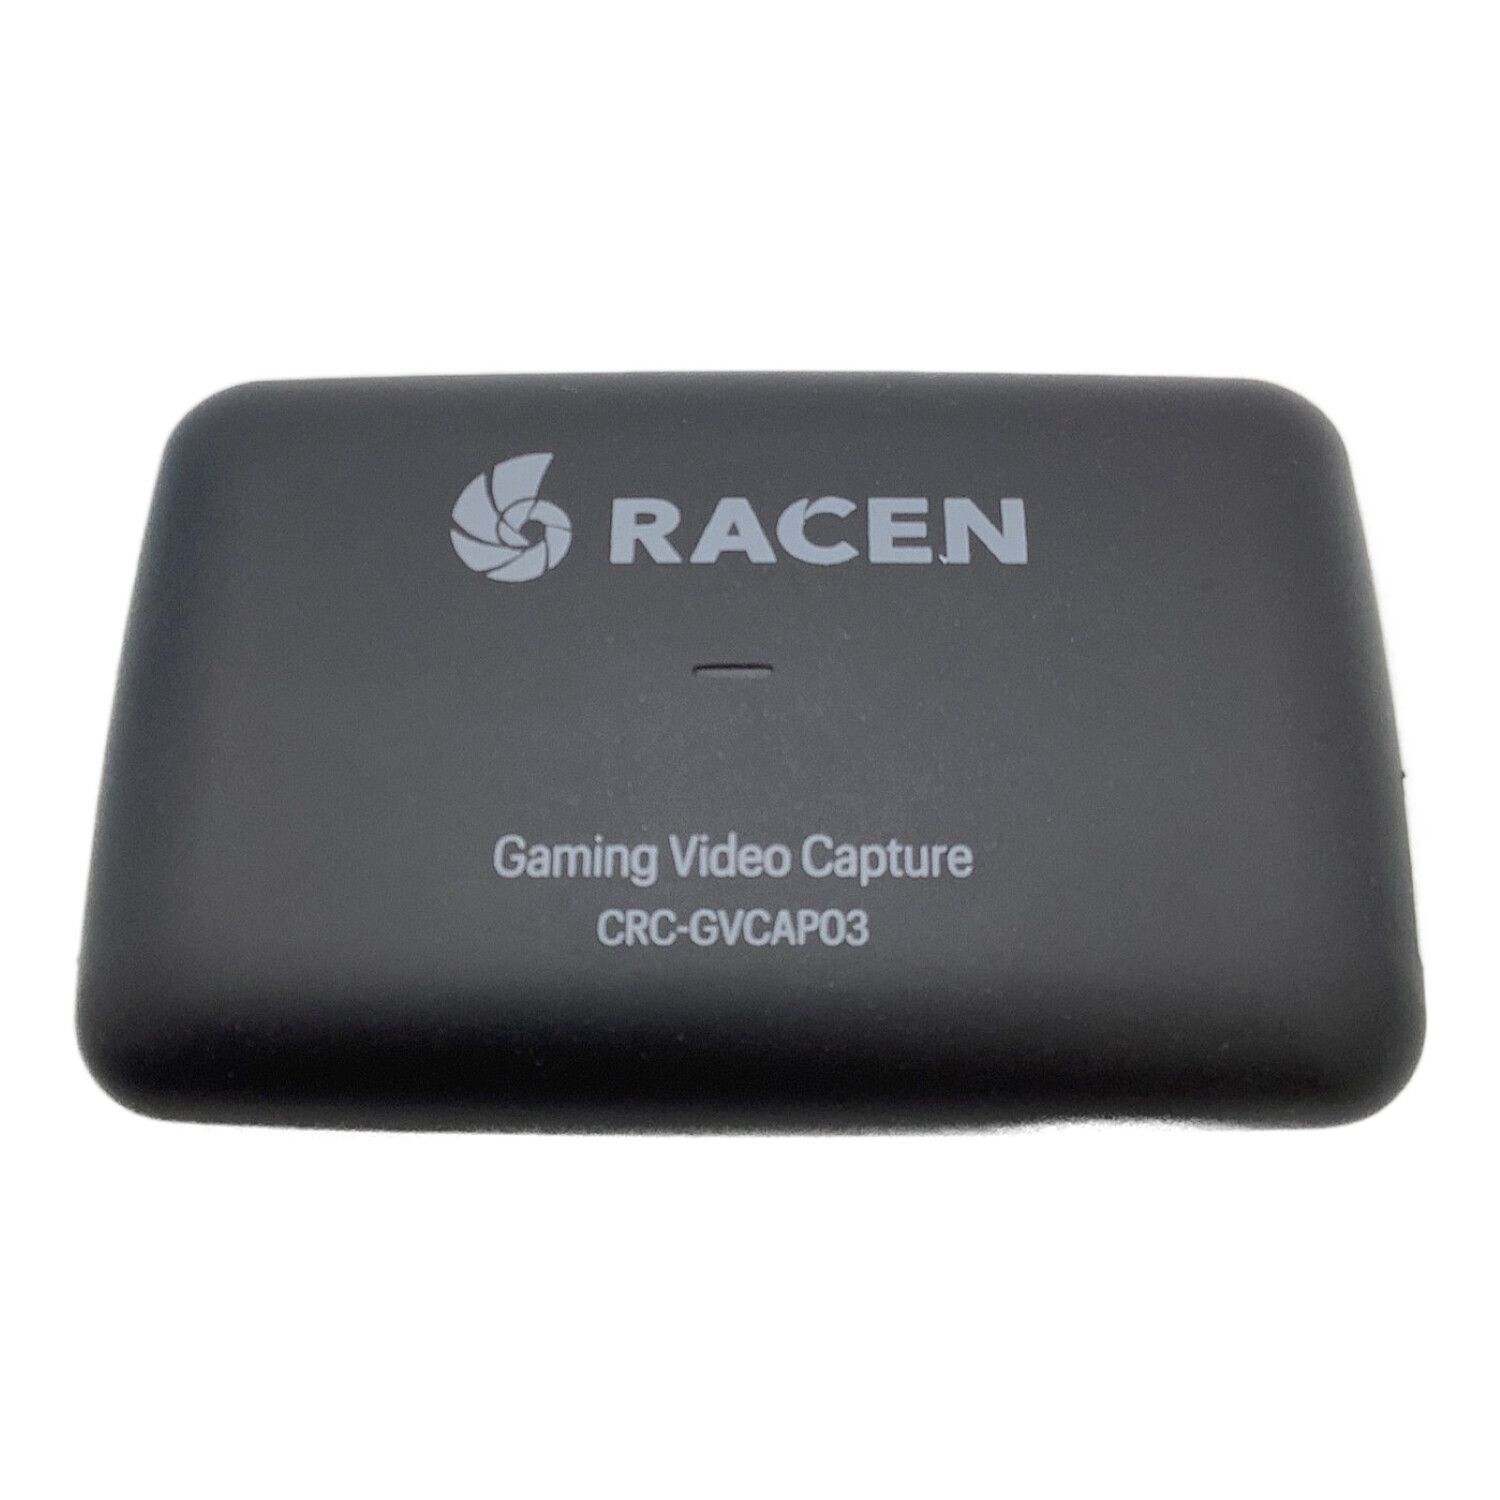 RACEN ゲーミングビデオキャプチャー CRC-GVCAP03 -｜トレファクONLINE